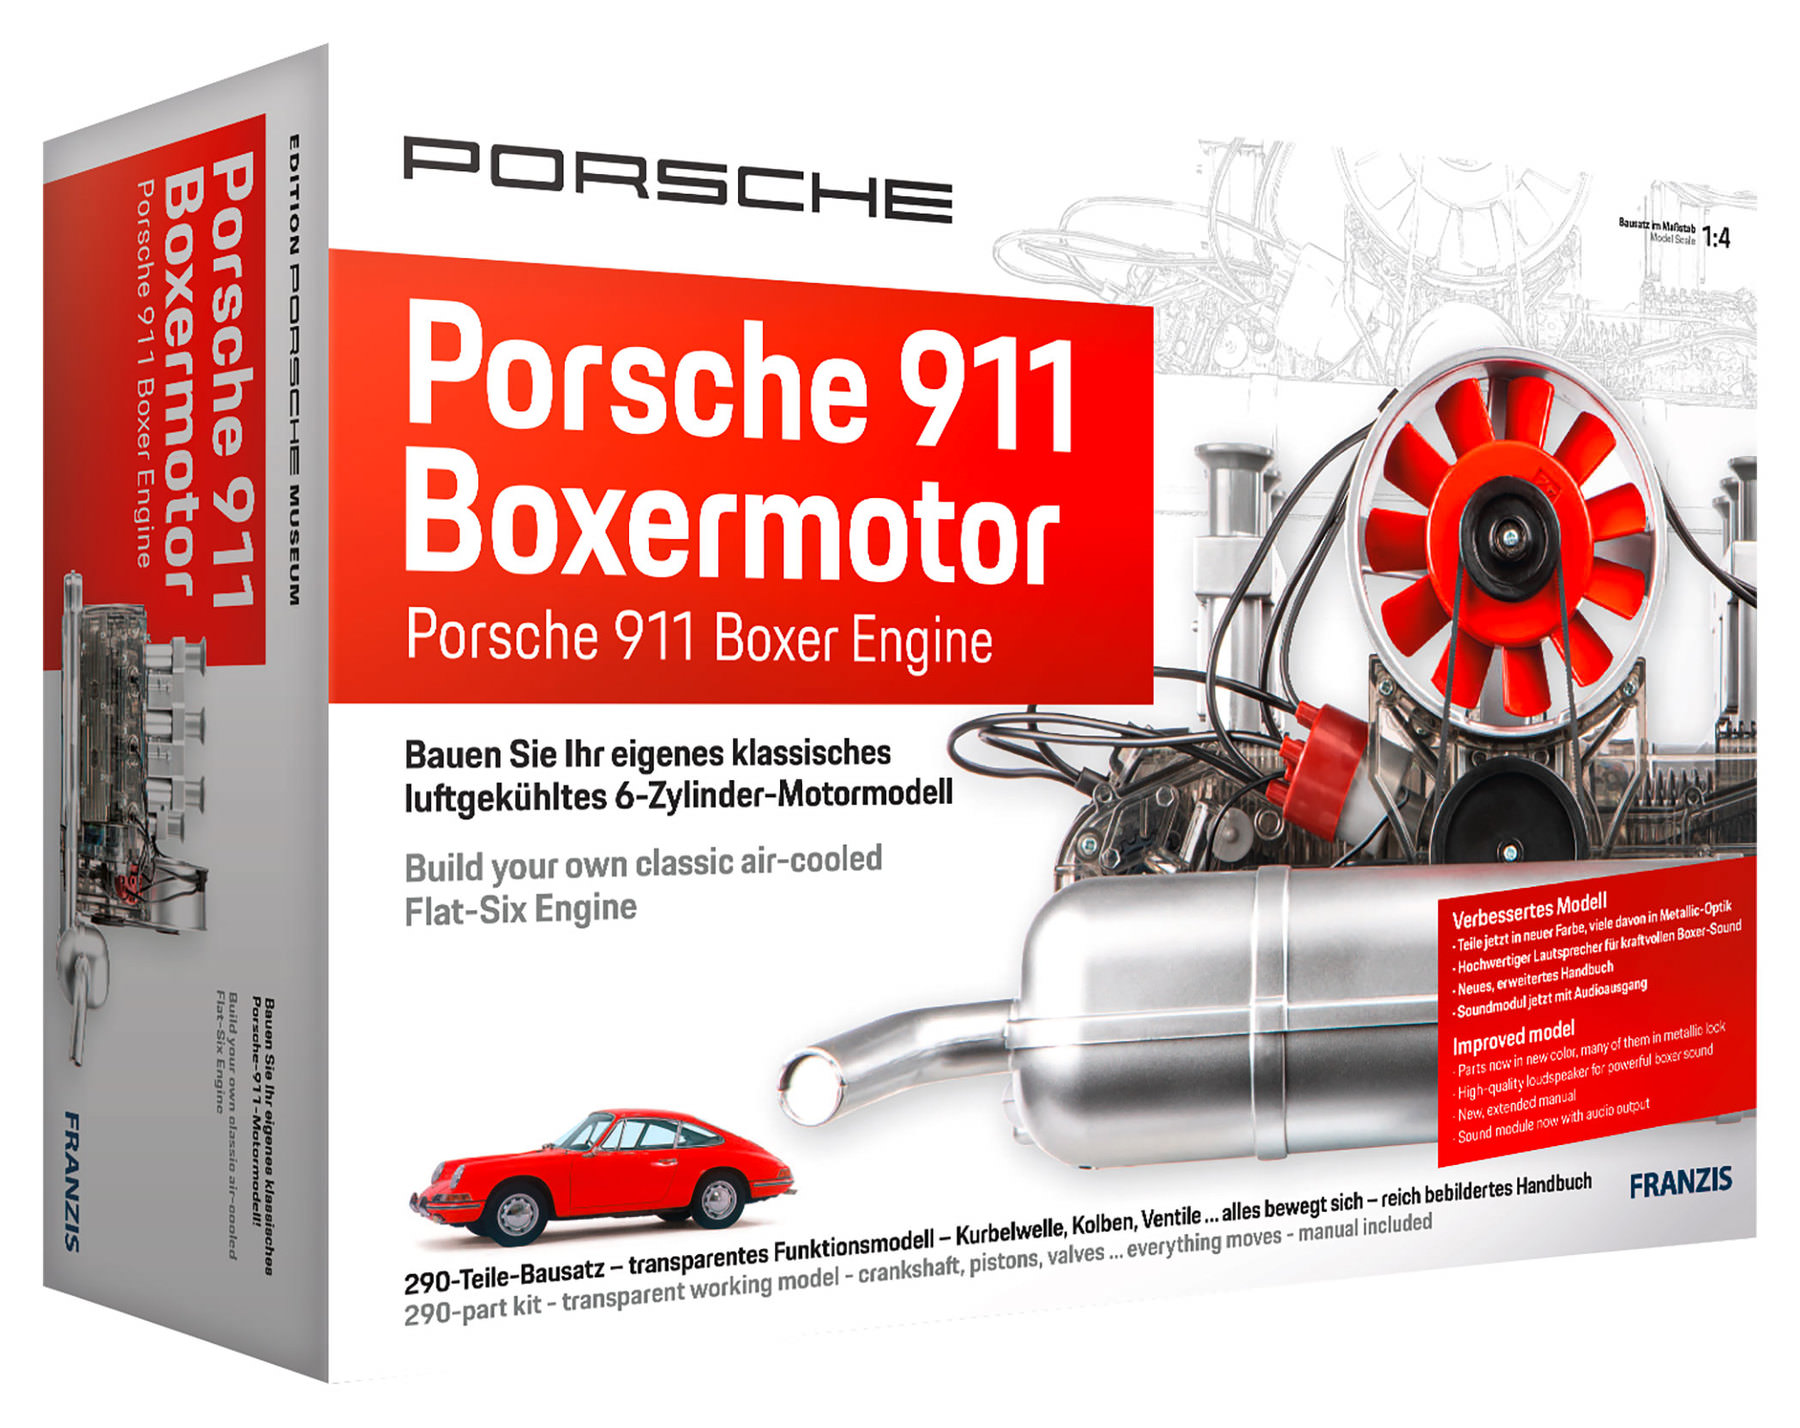 Franzis Porsche 911 6-cilinder-boxermotor